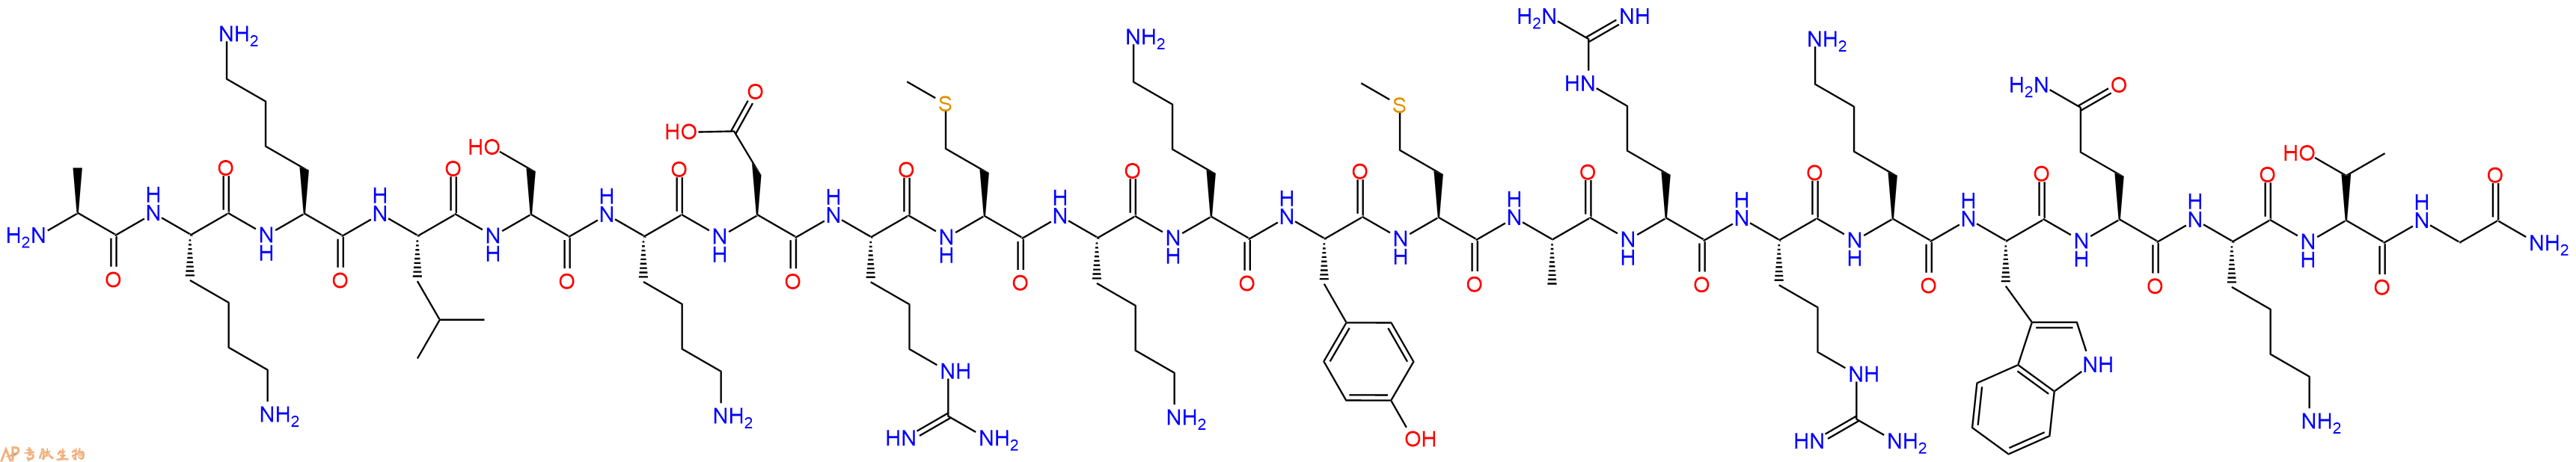 专肽生物产品肌球蛋白轻链激酶片段 Myosin Light Chain Kinase (480-501)313642-00-1